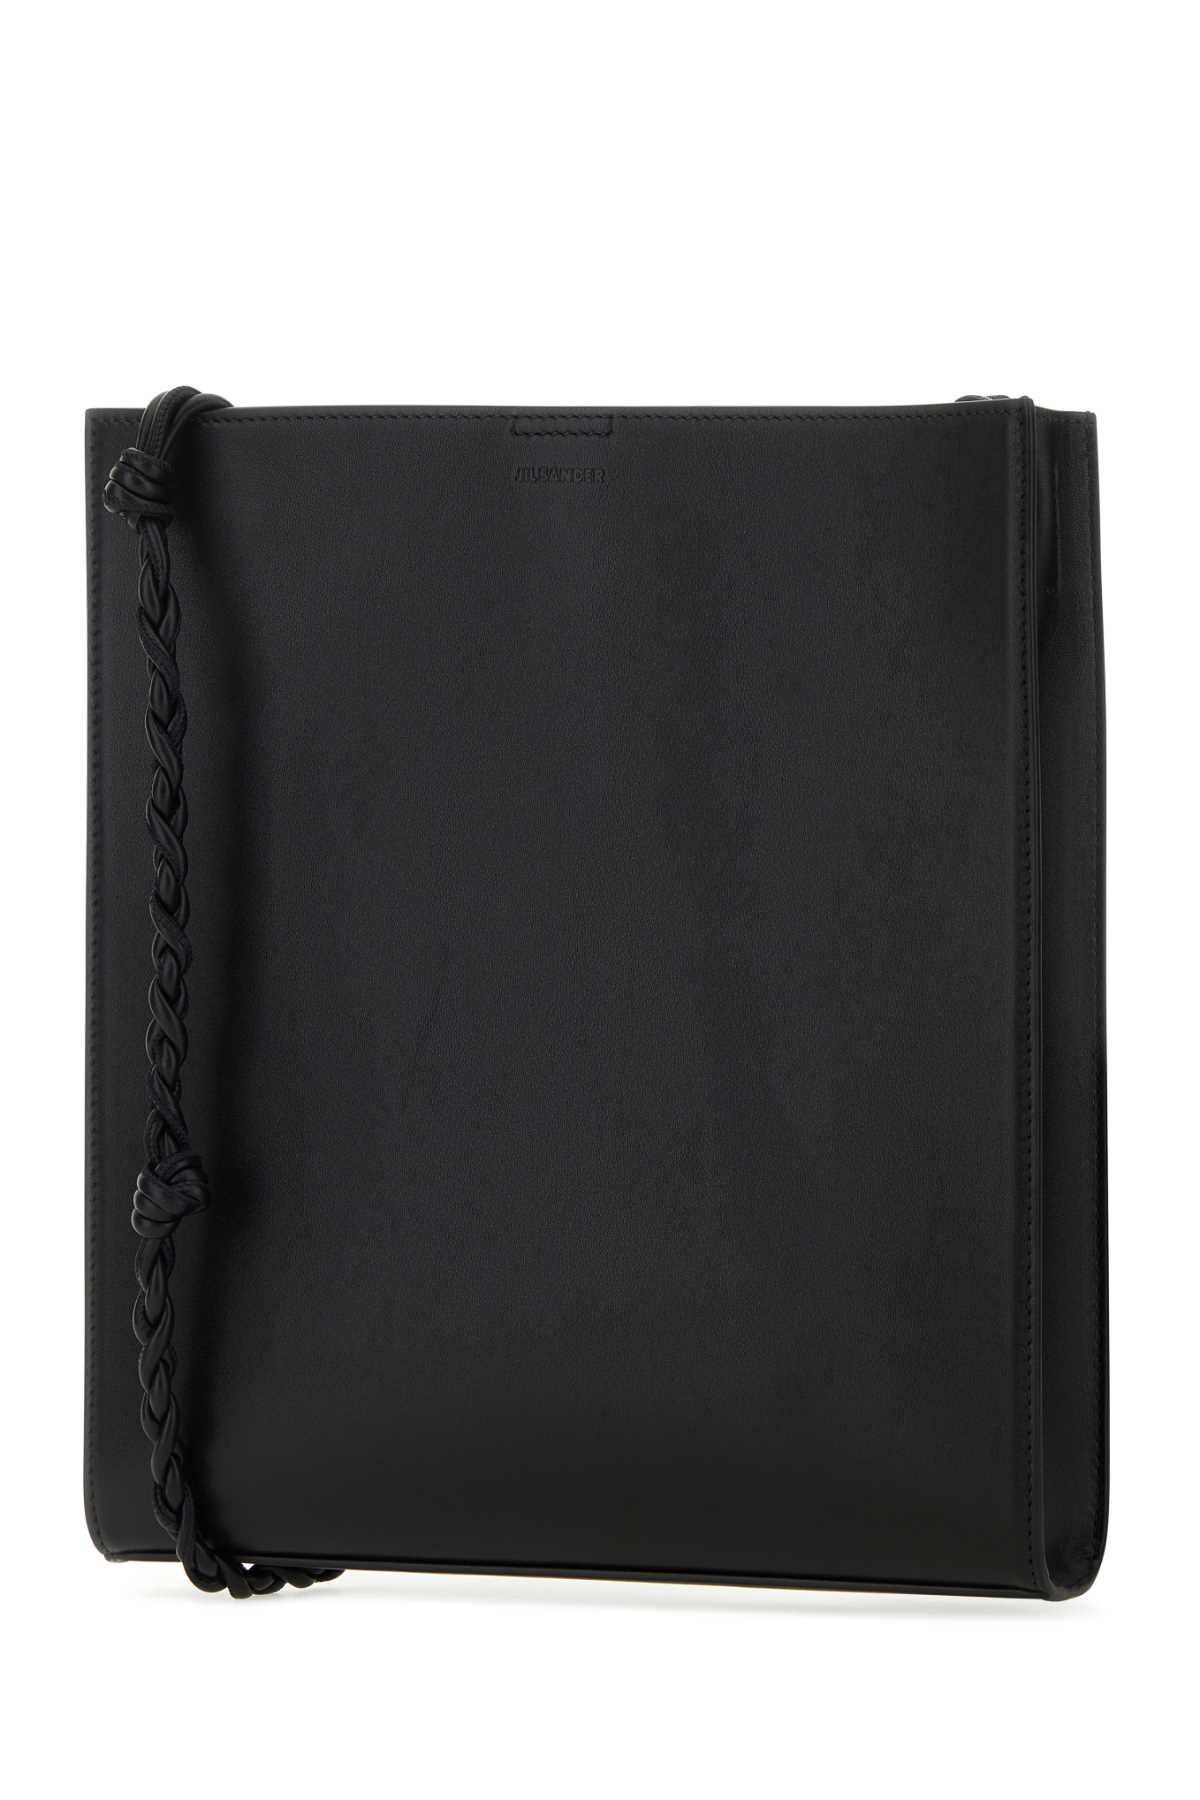 Jil Sander Black Leather Tangle Shoulder Bag In 001